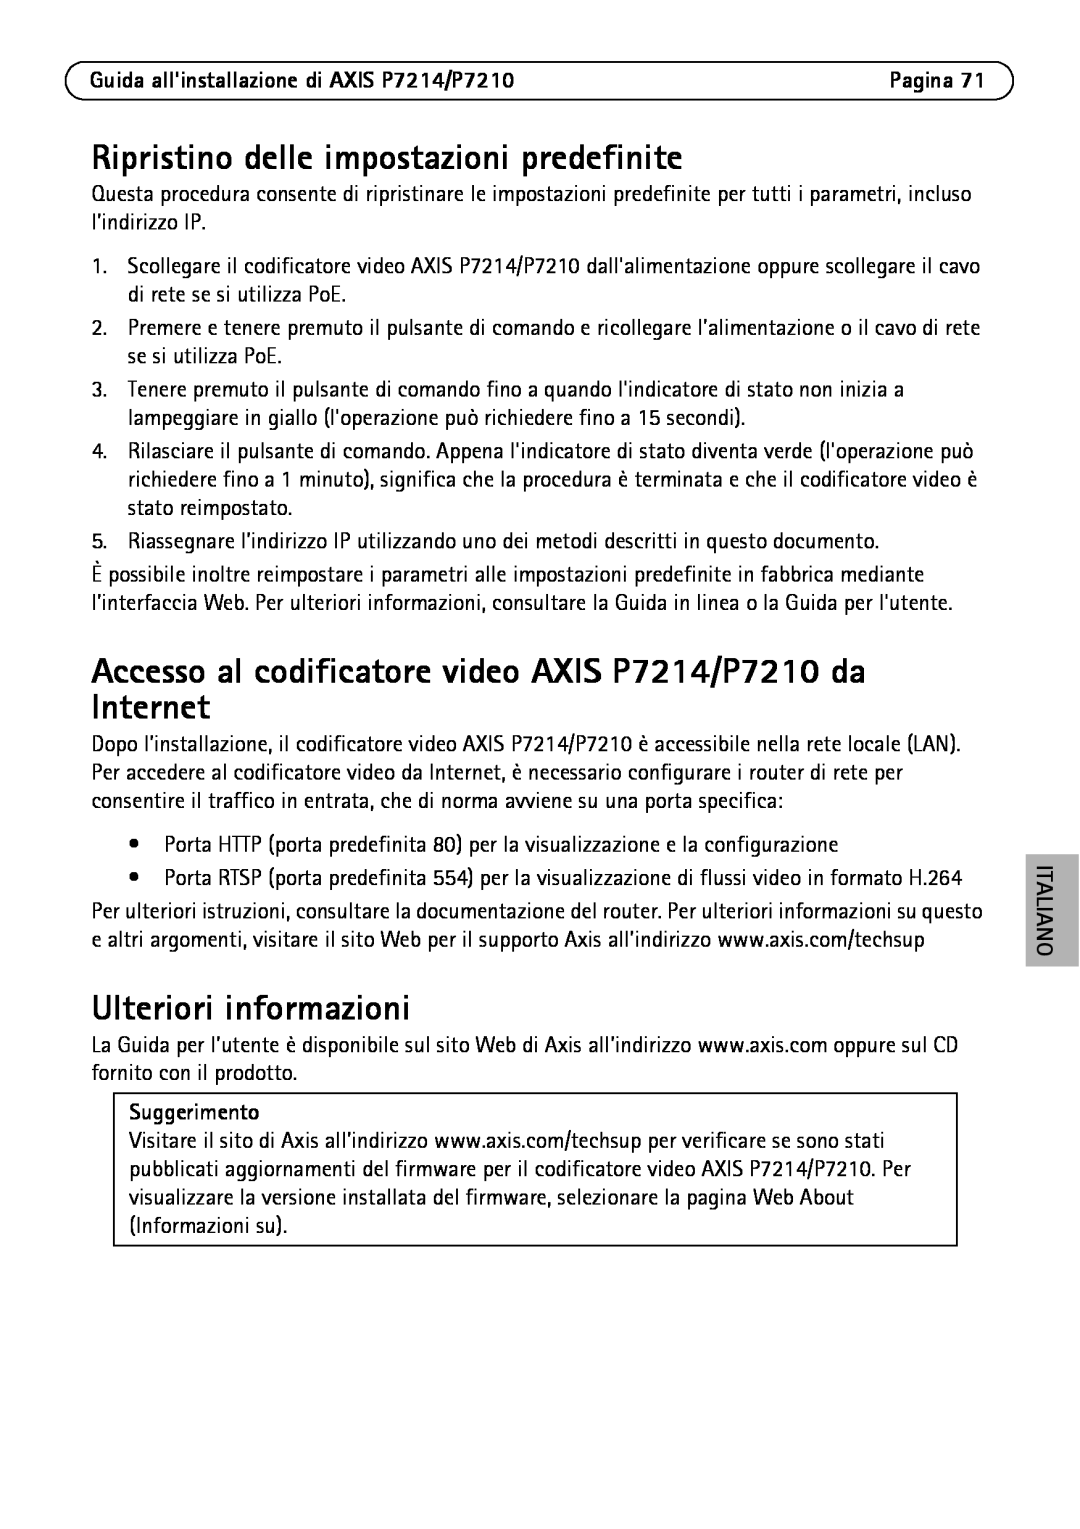 Axis Communications P7214/P7210 Ripristino delle impostazioni predefinite, Ulteriori informazioni, Suggerimento, Italiano 